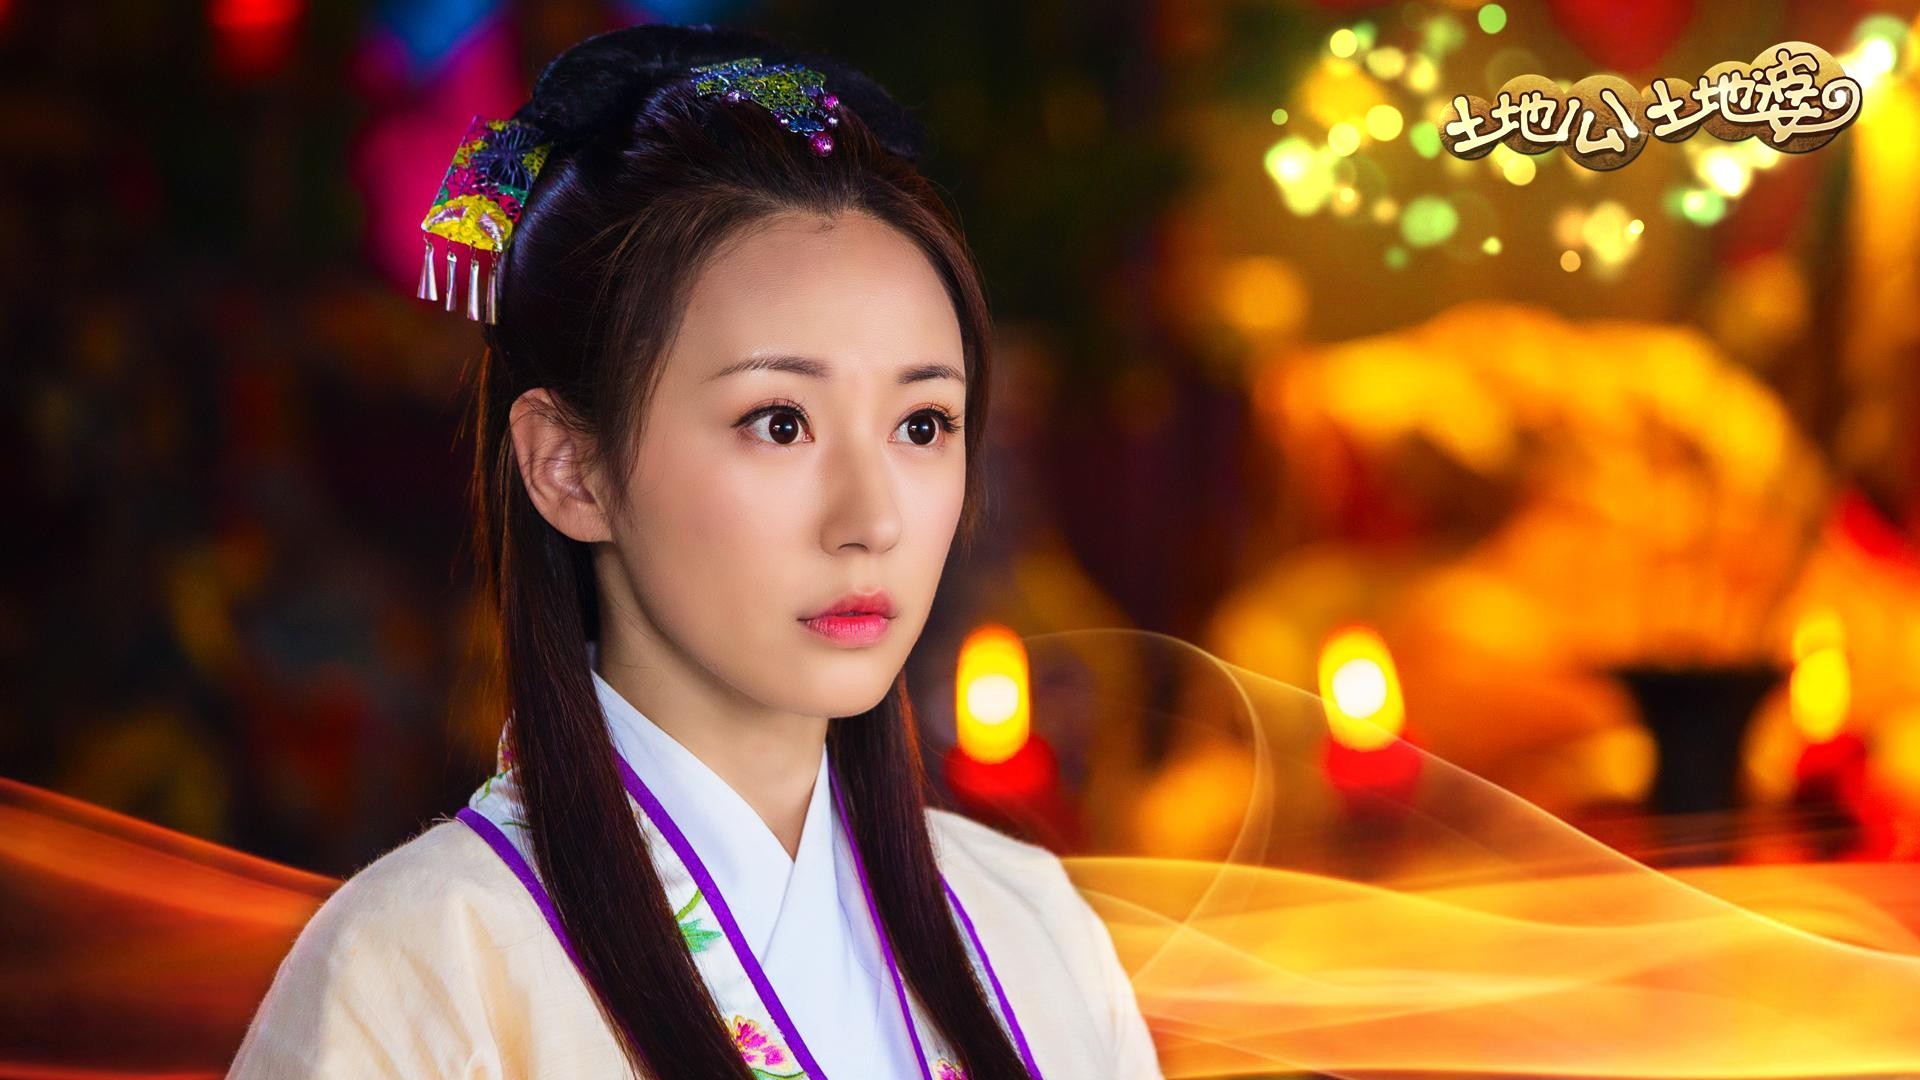 刘庭羽是一个美丽可爱,却喜欢演戏的女孩,她的眼神中透露着真诚